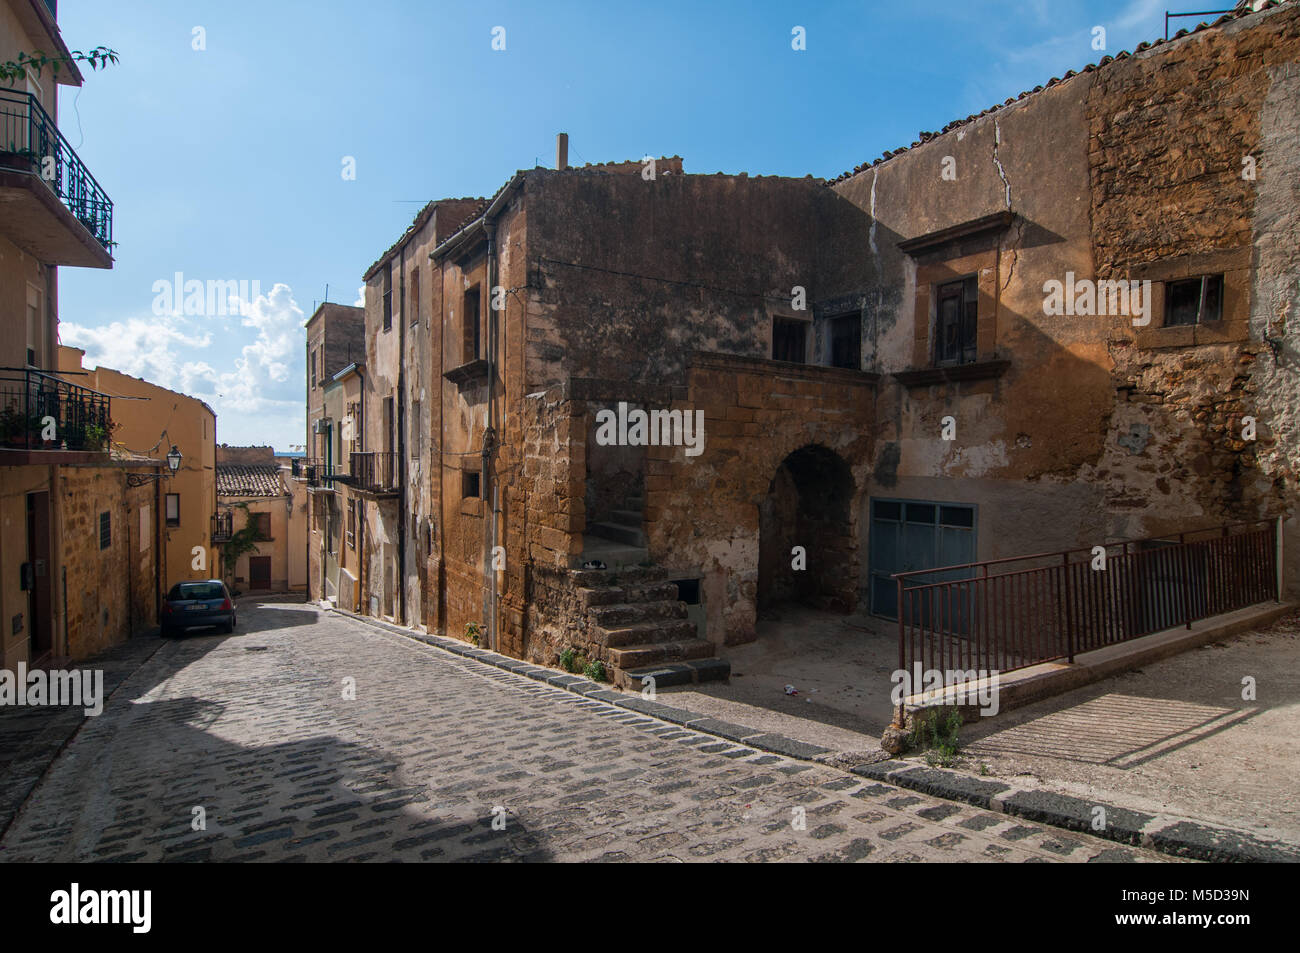 Una vista del villaggio di Sambuca di Sicilia, Italia. Sambuca di Sicilia è  un comune in provincia di Agrigento nella regione italiana Sicilia, lo Foto  stock - Alamy